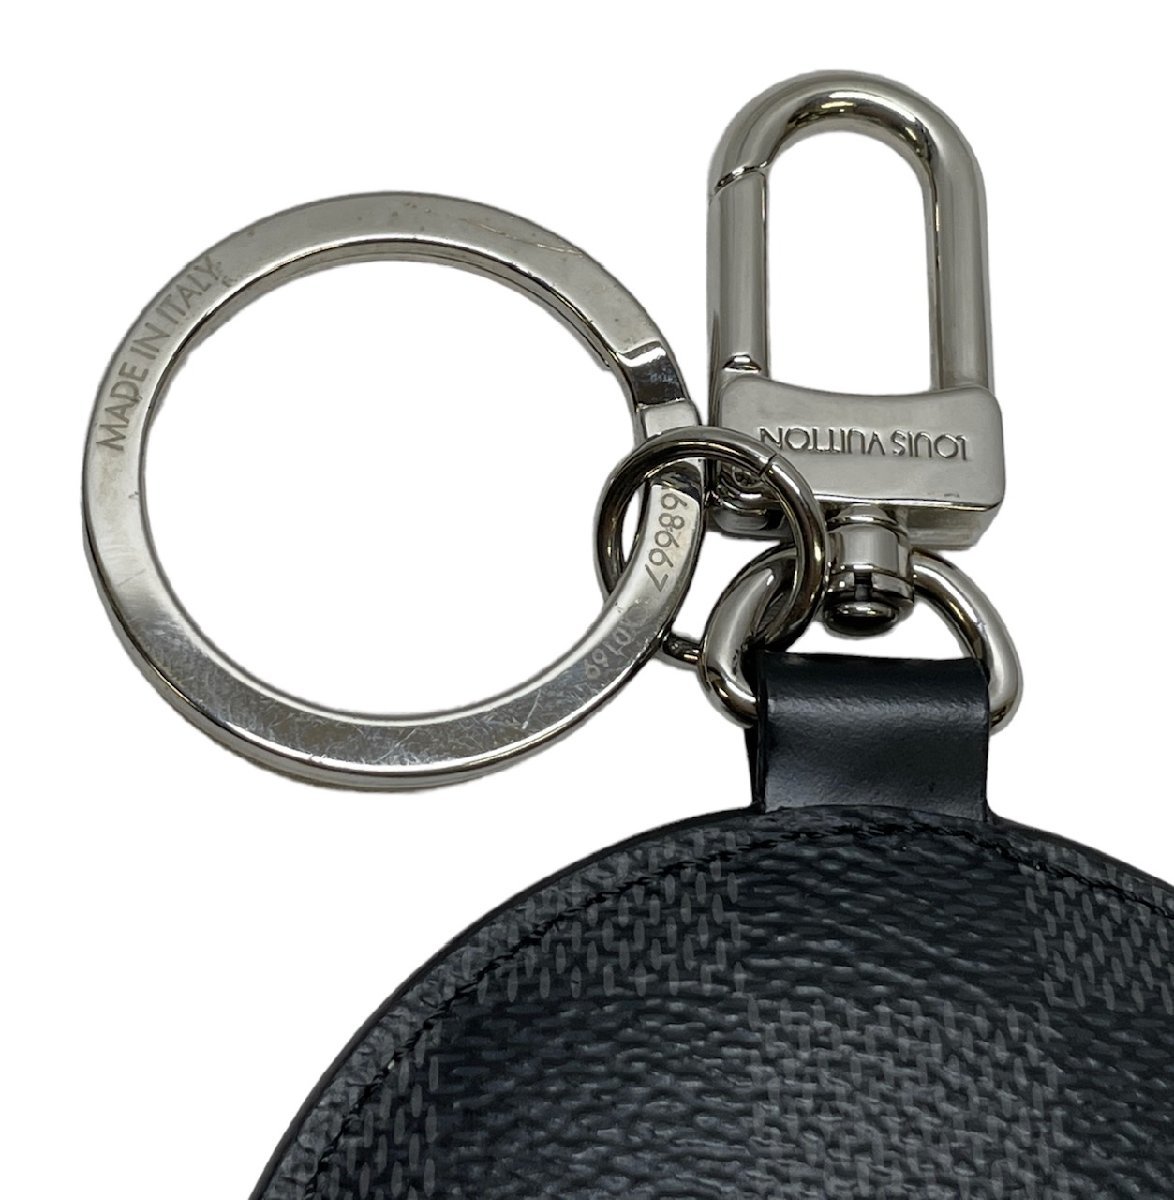  Louis Vuitton porutokre padi do window rose key holder key ring Damier gla Fit M68667 LOUIS VUITTON used 